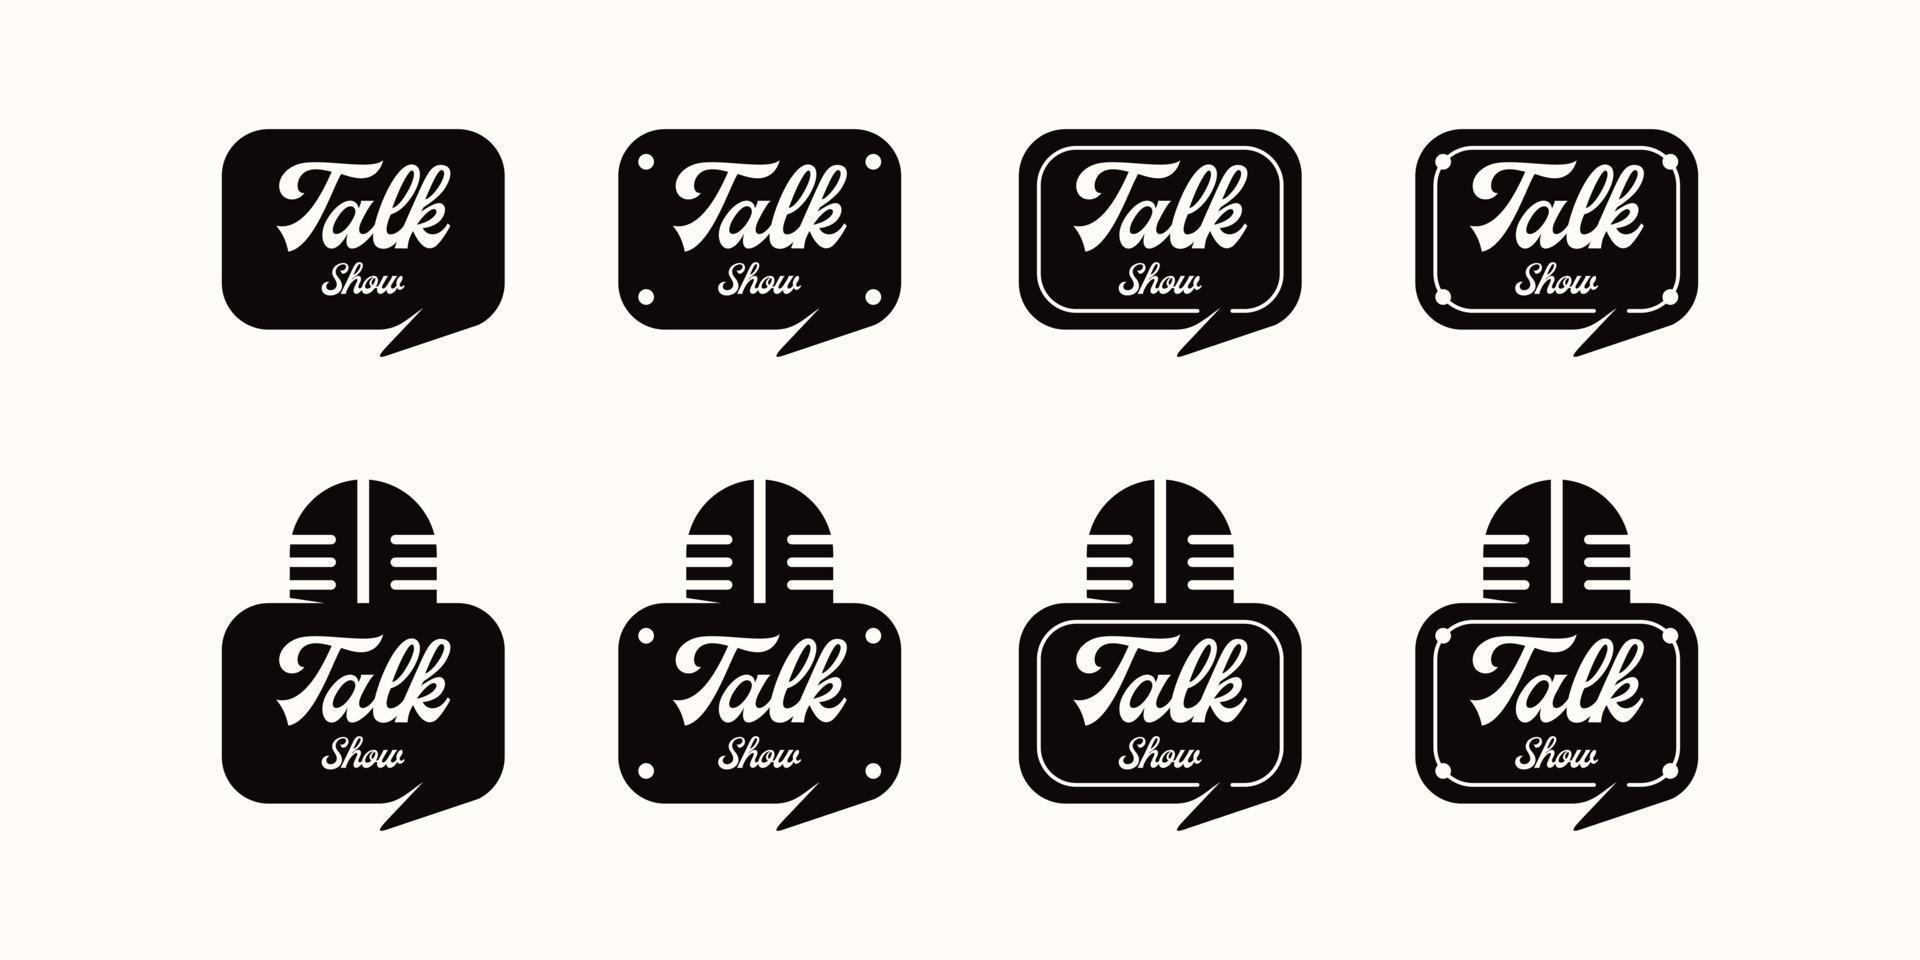 talk show logo collection, logo inspiration vector